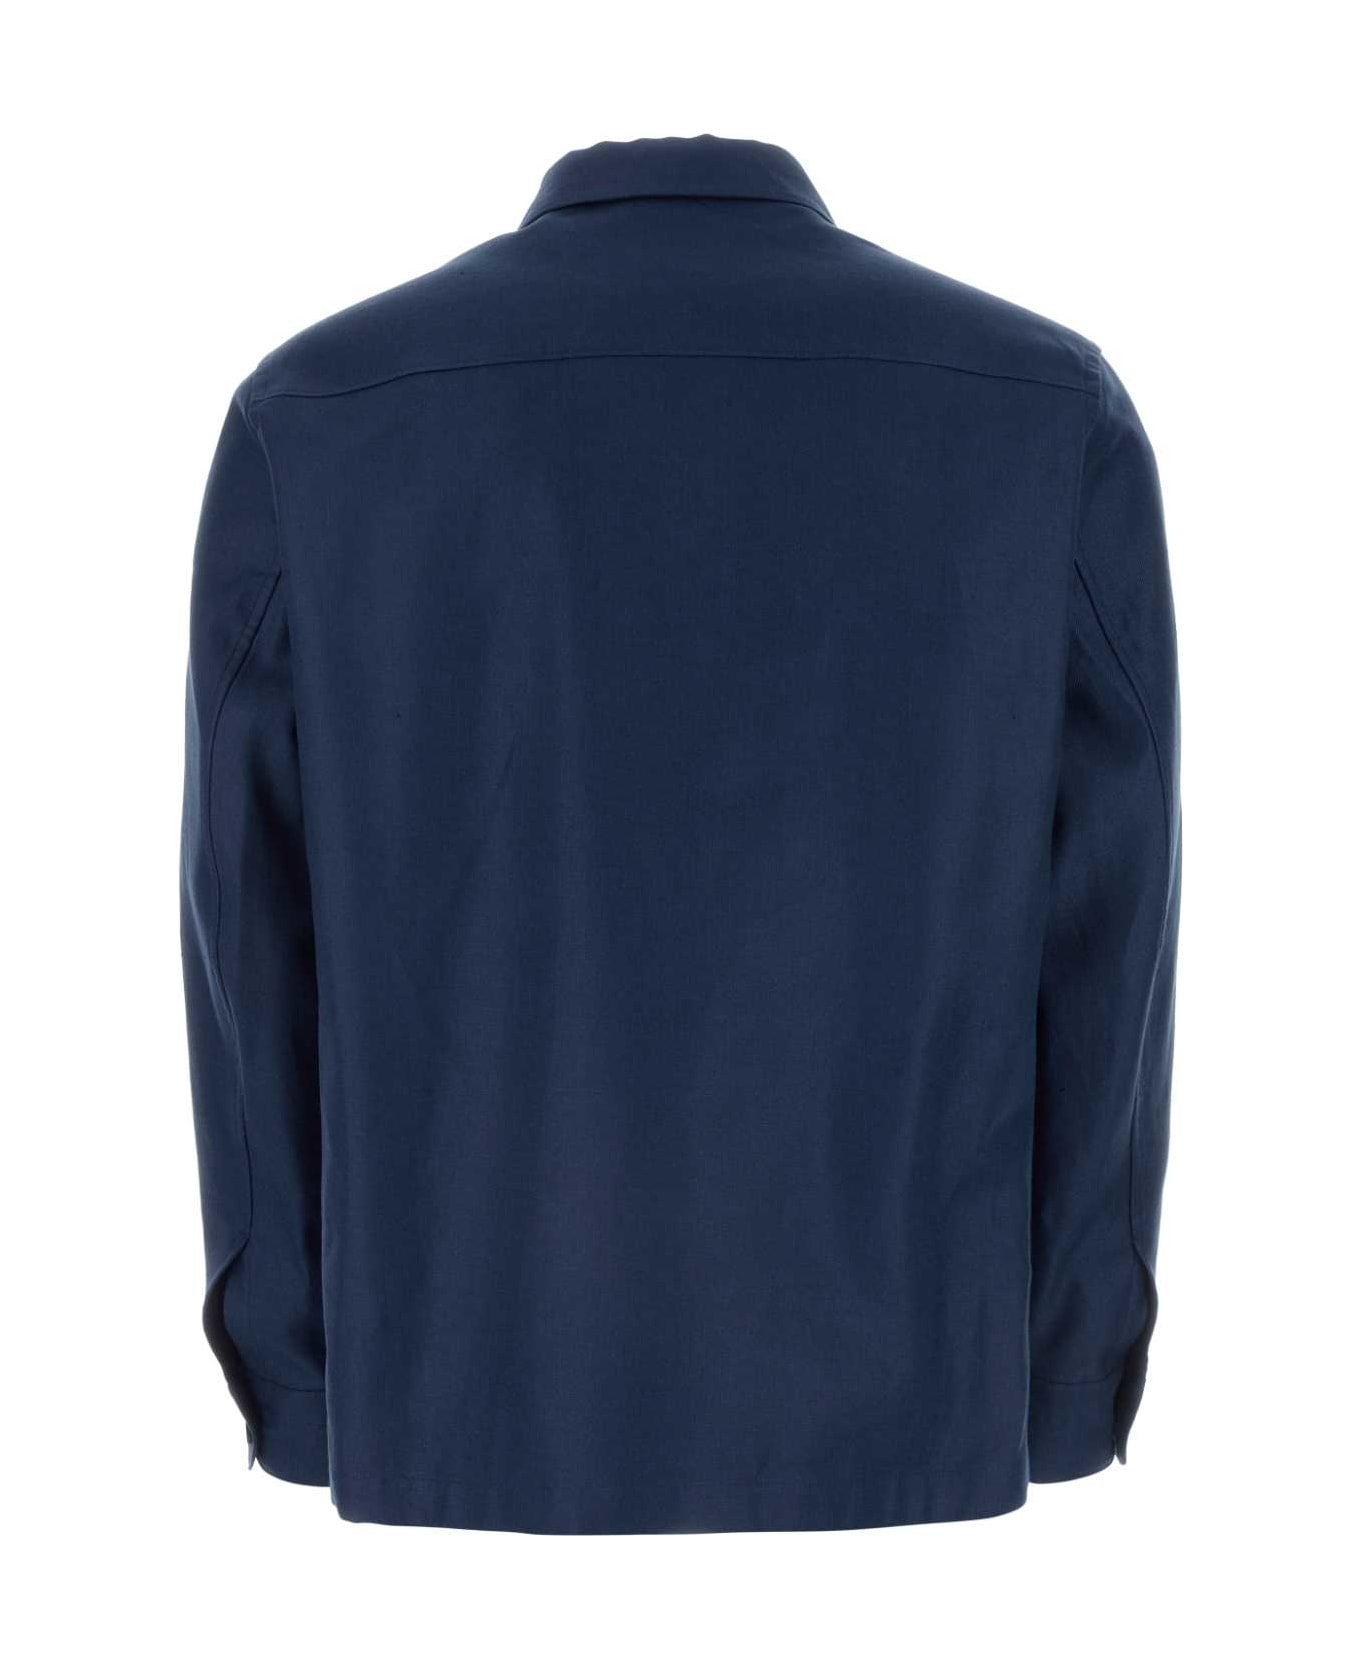 Zegna Blue Linen Shirt - B07G